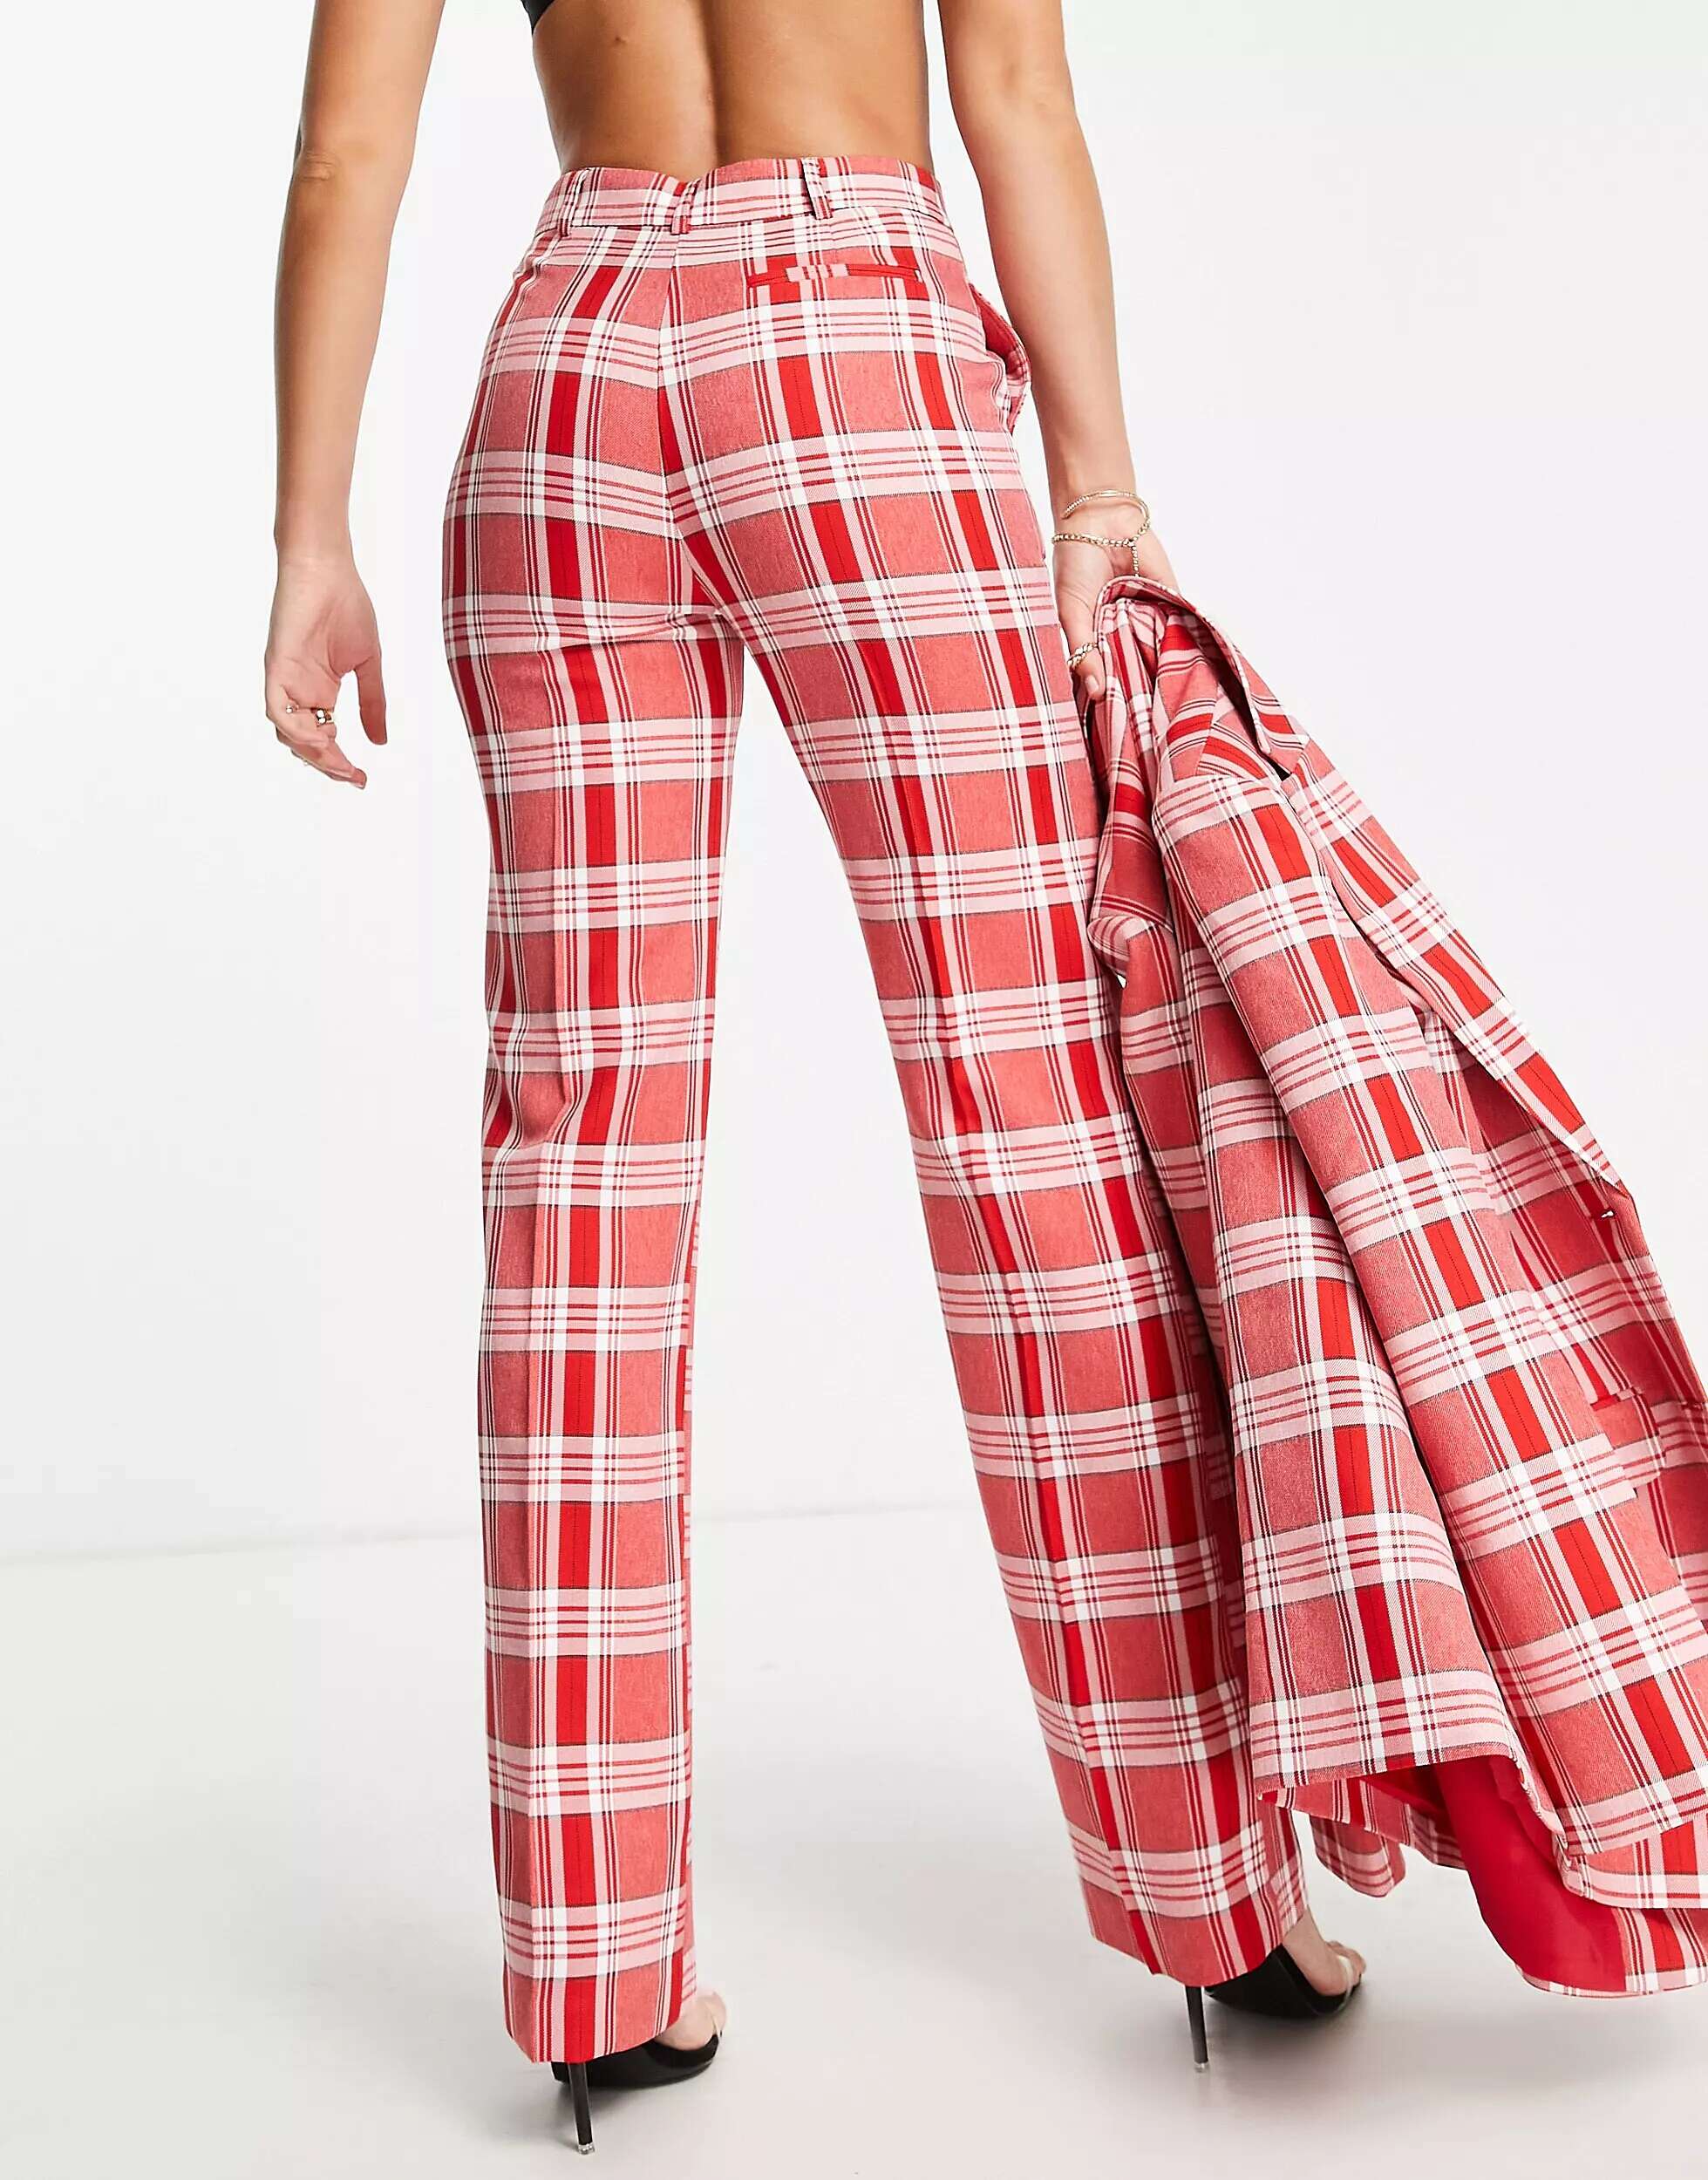 Узкие прямые костюмные брюки в красную клетку ASOS Tall Mix & Match бордовые узкие костюмные брюки в клетку asos